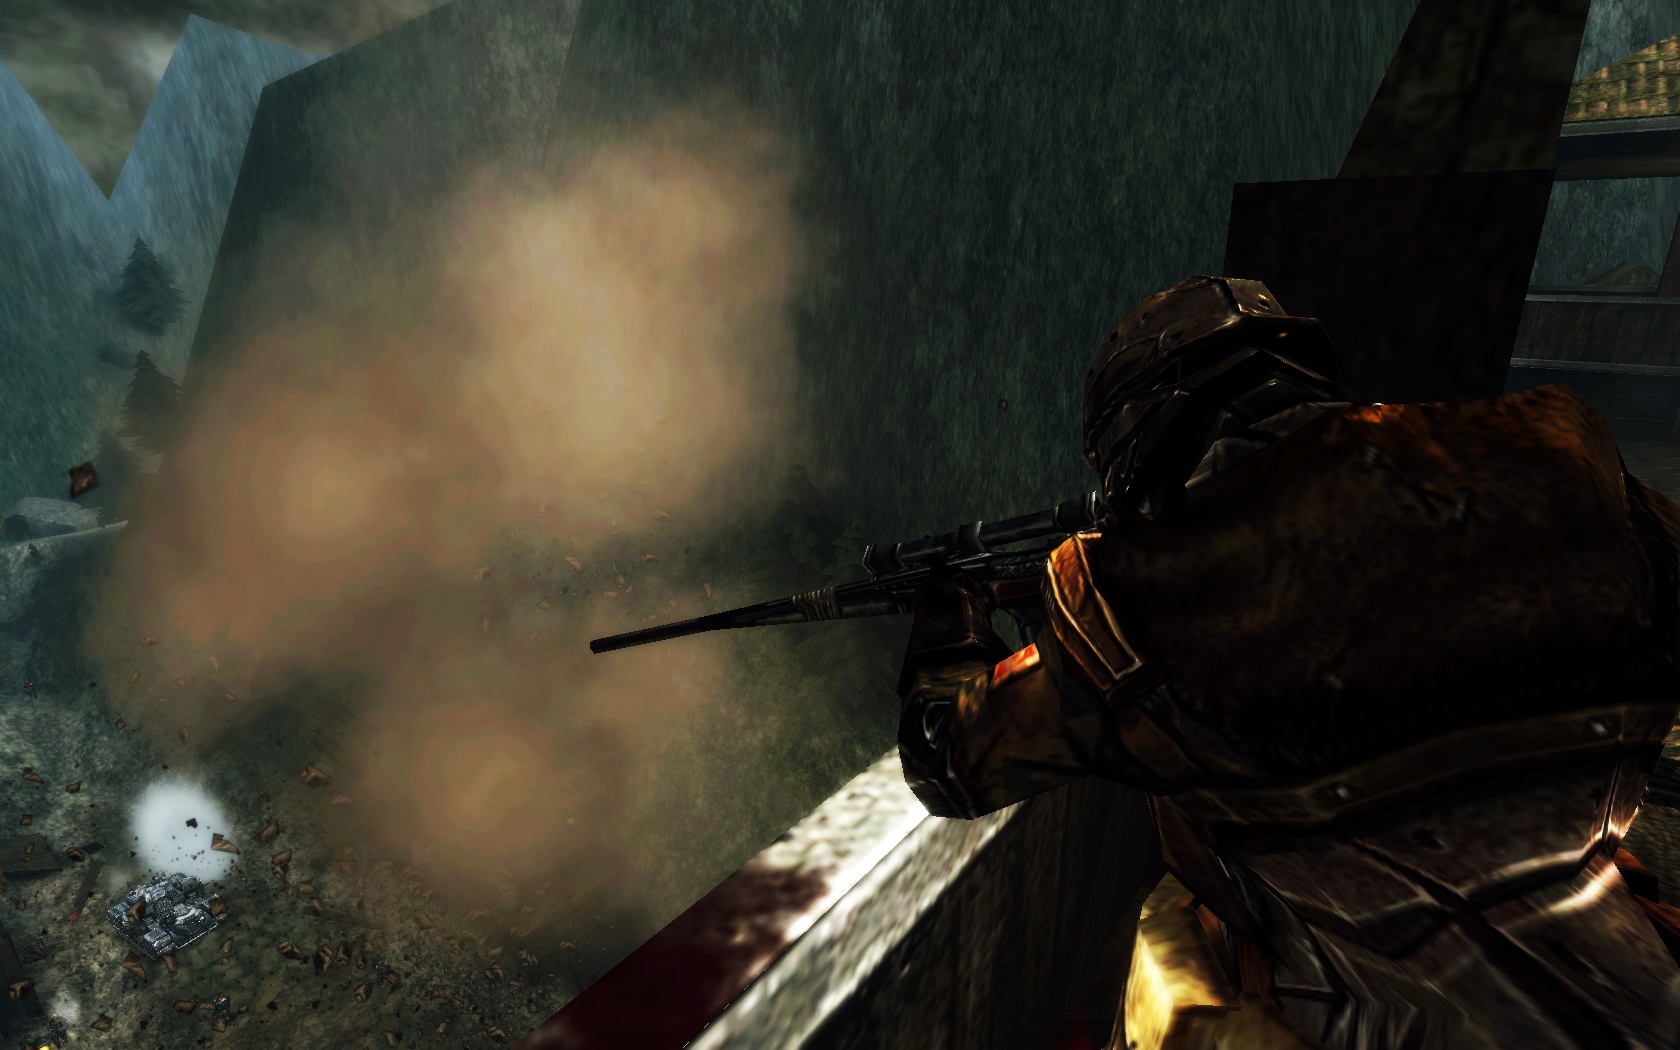 Iron Grip: Warlord screenshot